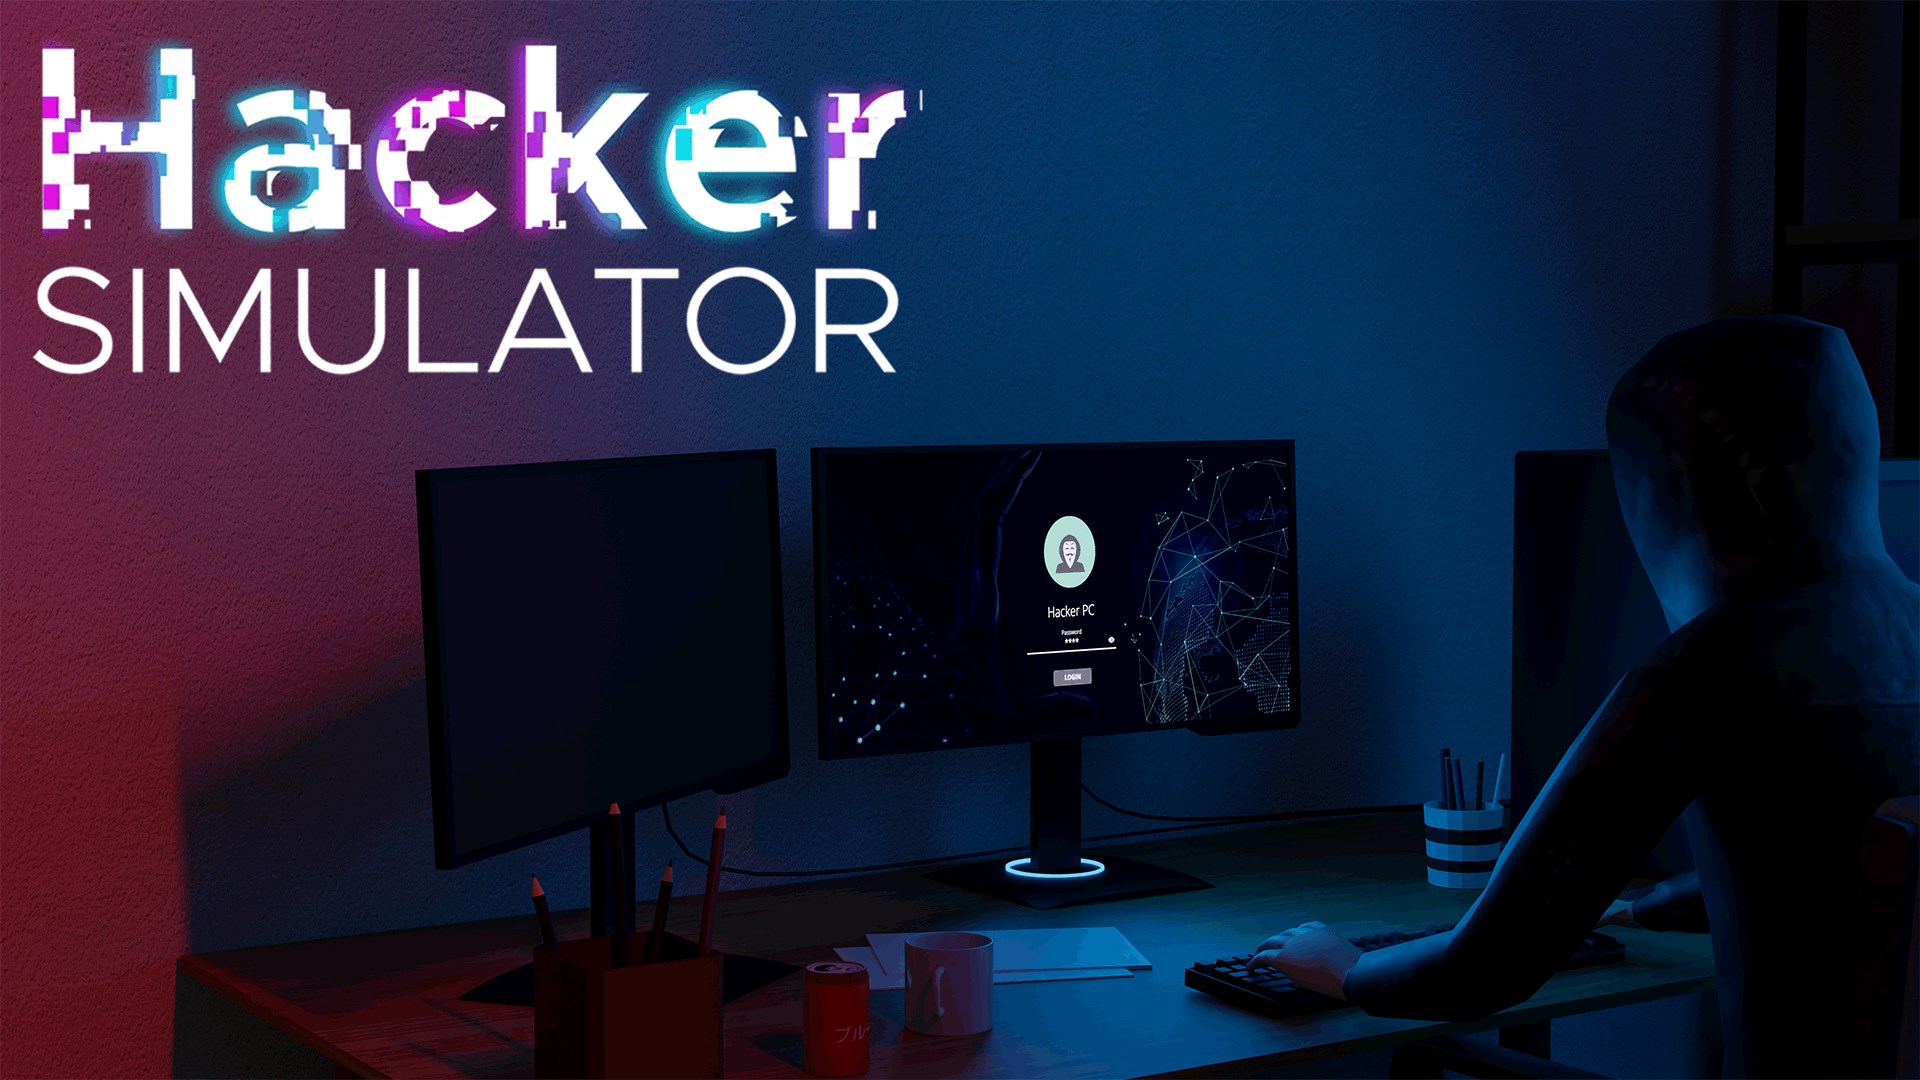 Hacker Simulator - Download